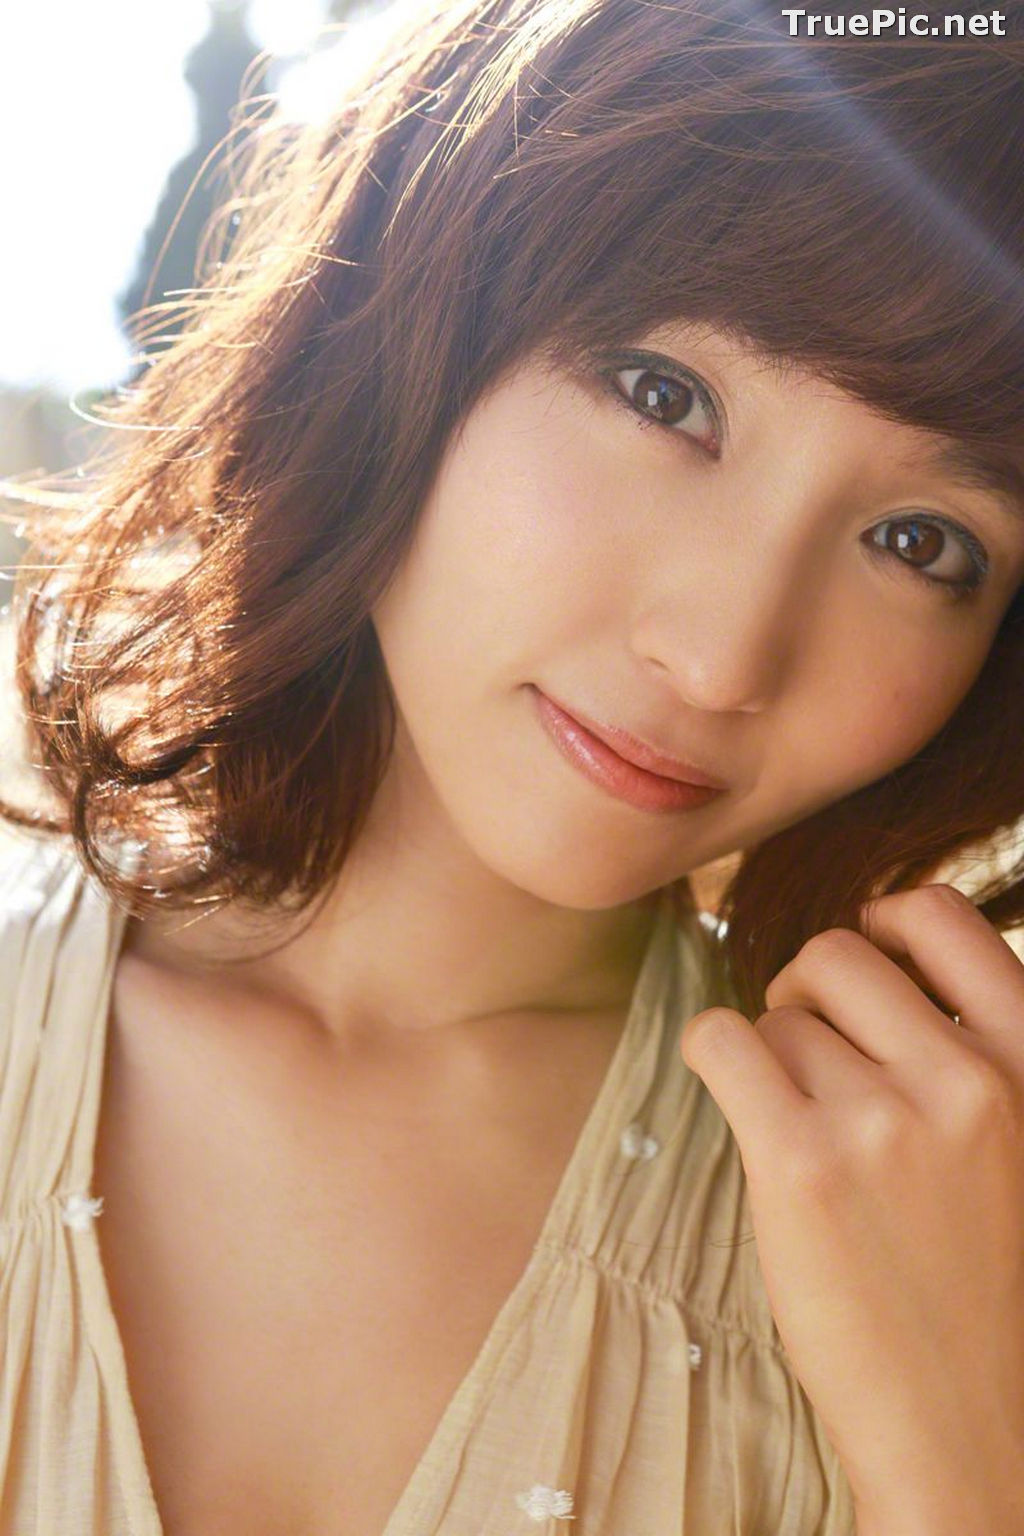 Image Wanibooks No.125 – Japanese Gravure Idol and Singer – Risa Yoshiki - TruePic.net - Picture-20